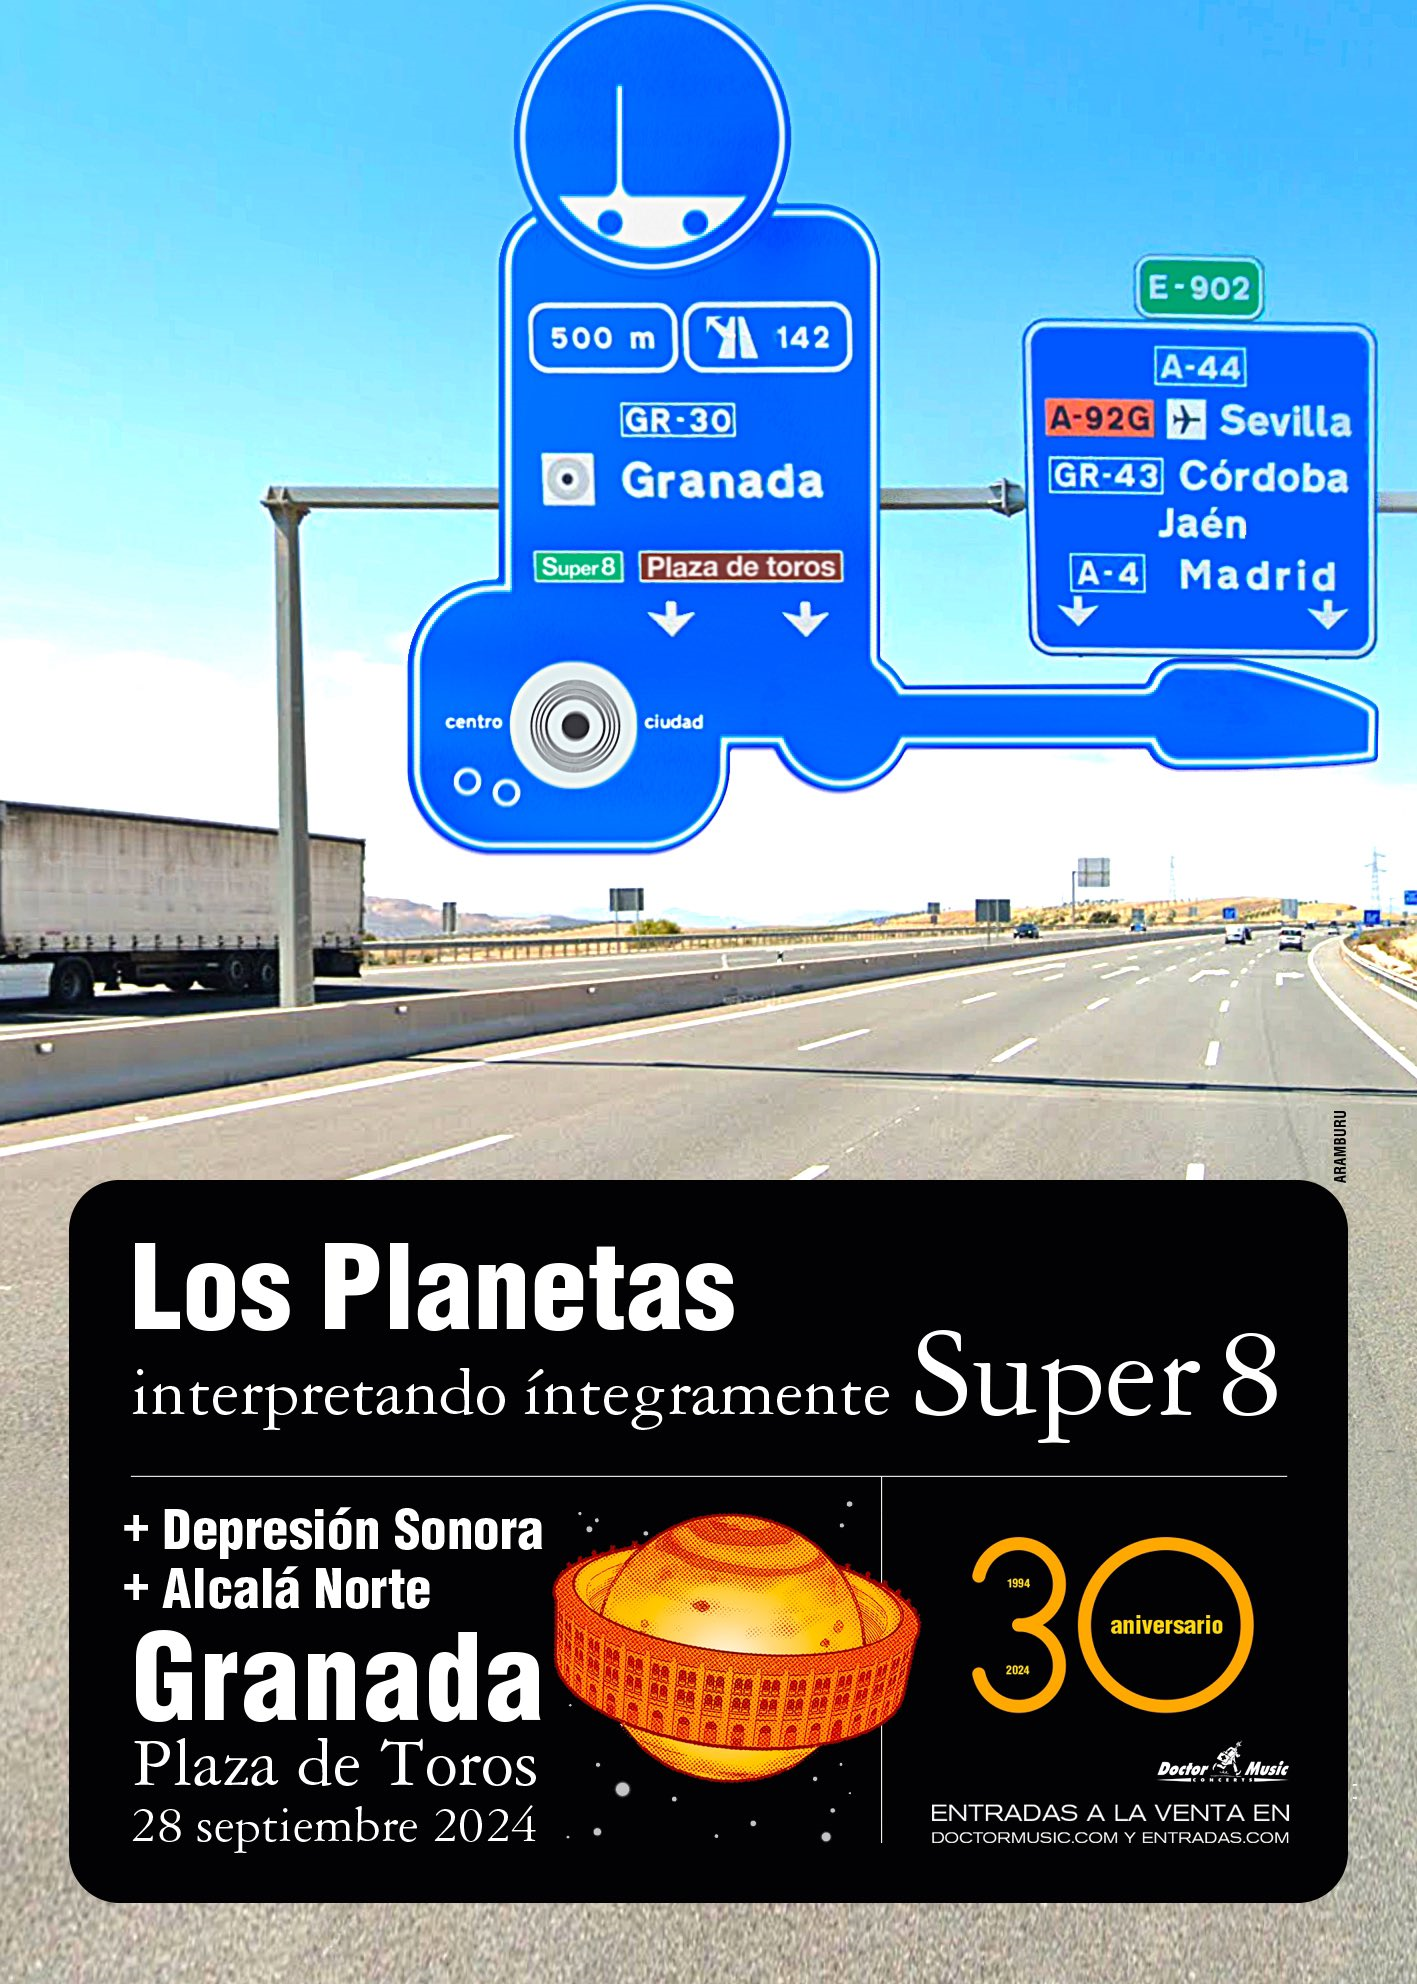 Los Planetas dan un concierto especial en la Plaza de Toros de Granada el 28 de septiembre por los treinta años de Super 8